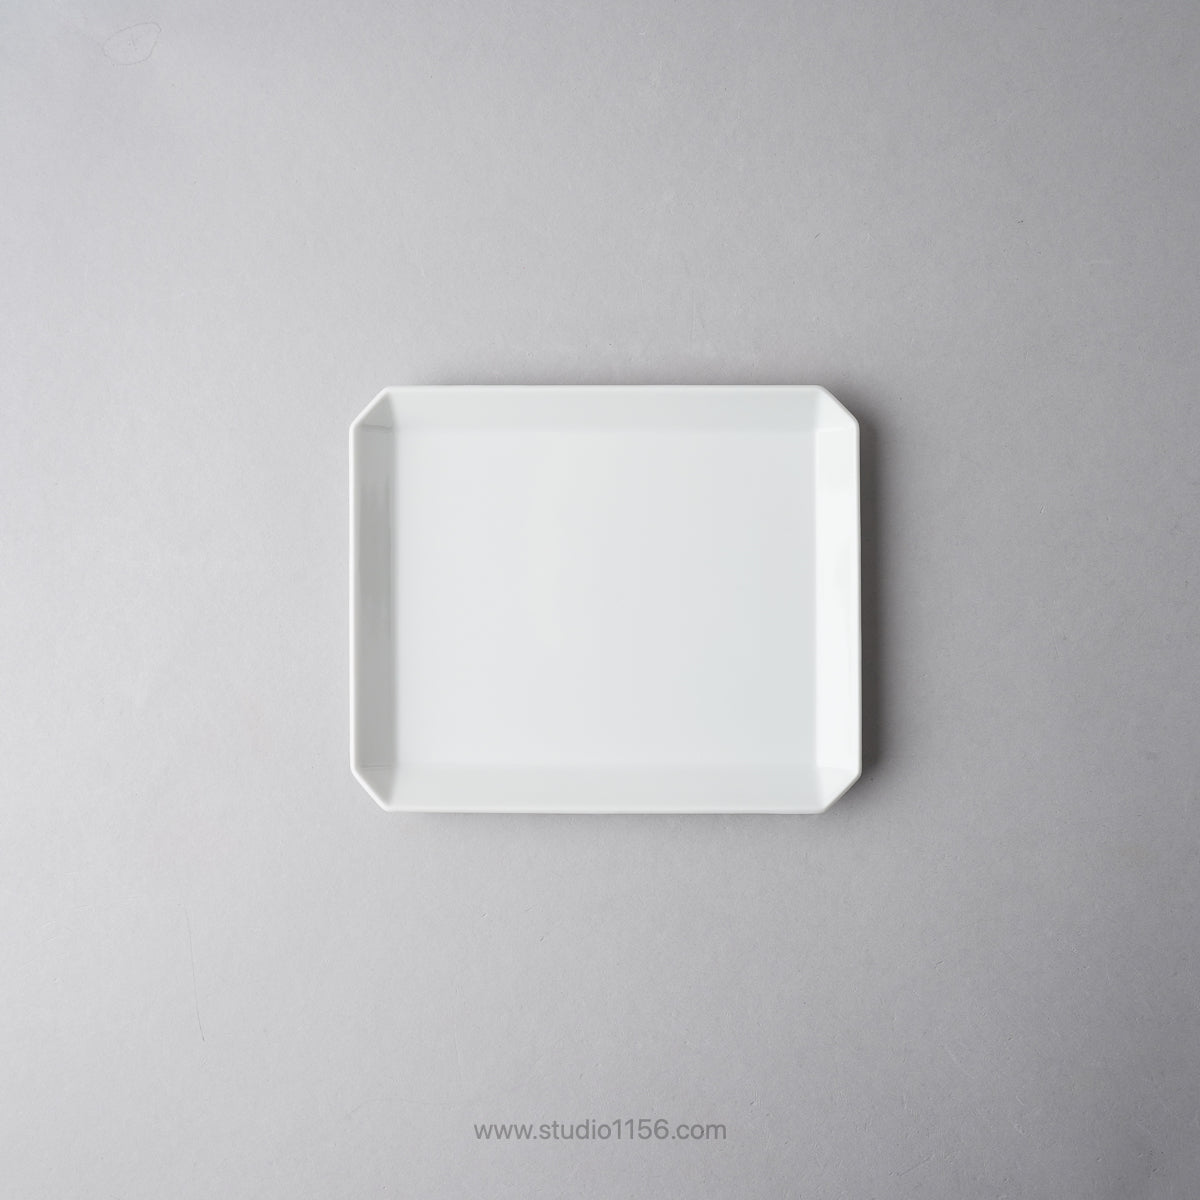 有田焼 スクエアプレート プレーン ホワイト / TY Square Plate Plain White 165 1616 / Arita Japan Studio1156